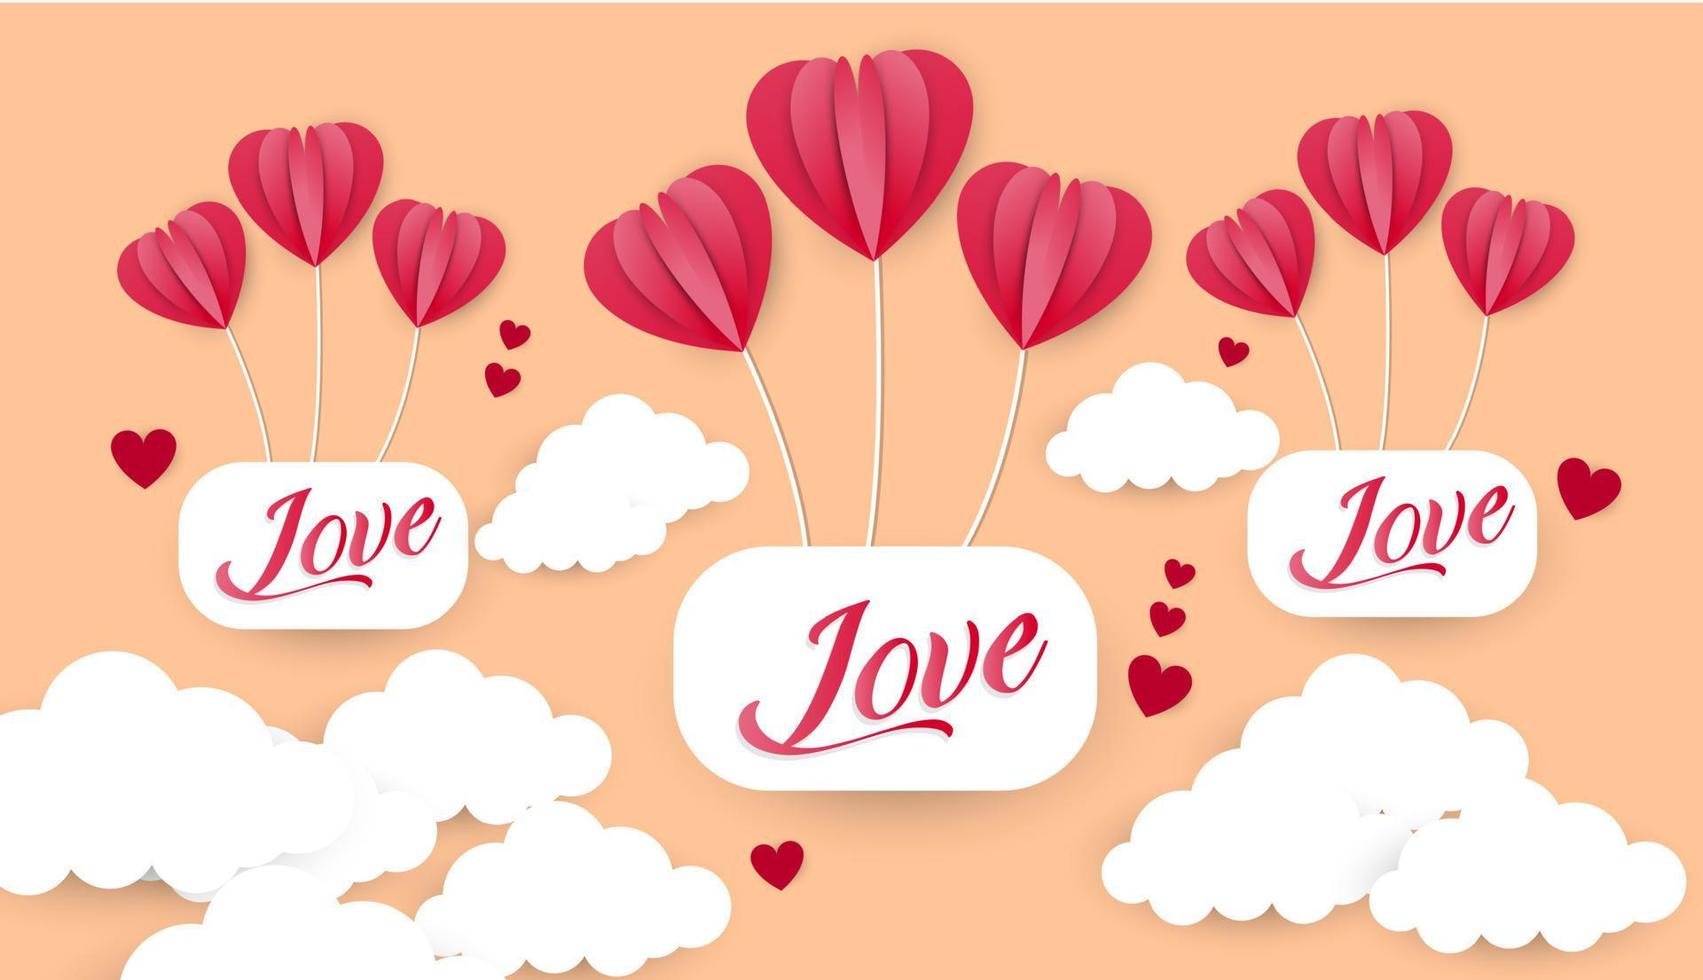 conception de vecteur de typographie happy valentines day avec des ballons en papier dans le ciel rouge rose forme de coeur coupé nuages blancs image vectorielle d'amour